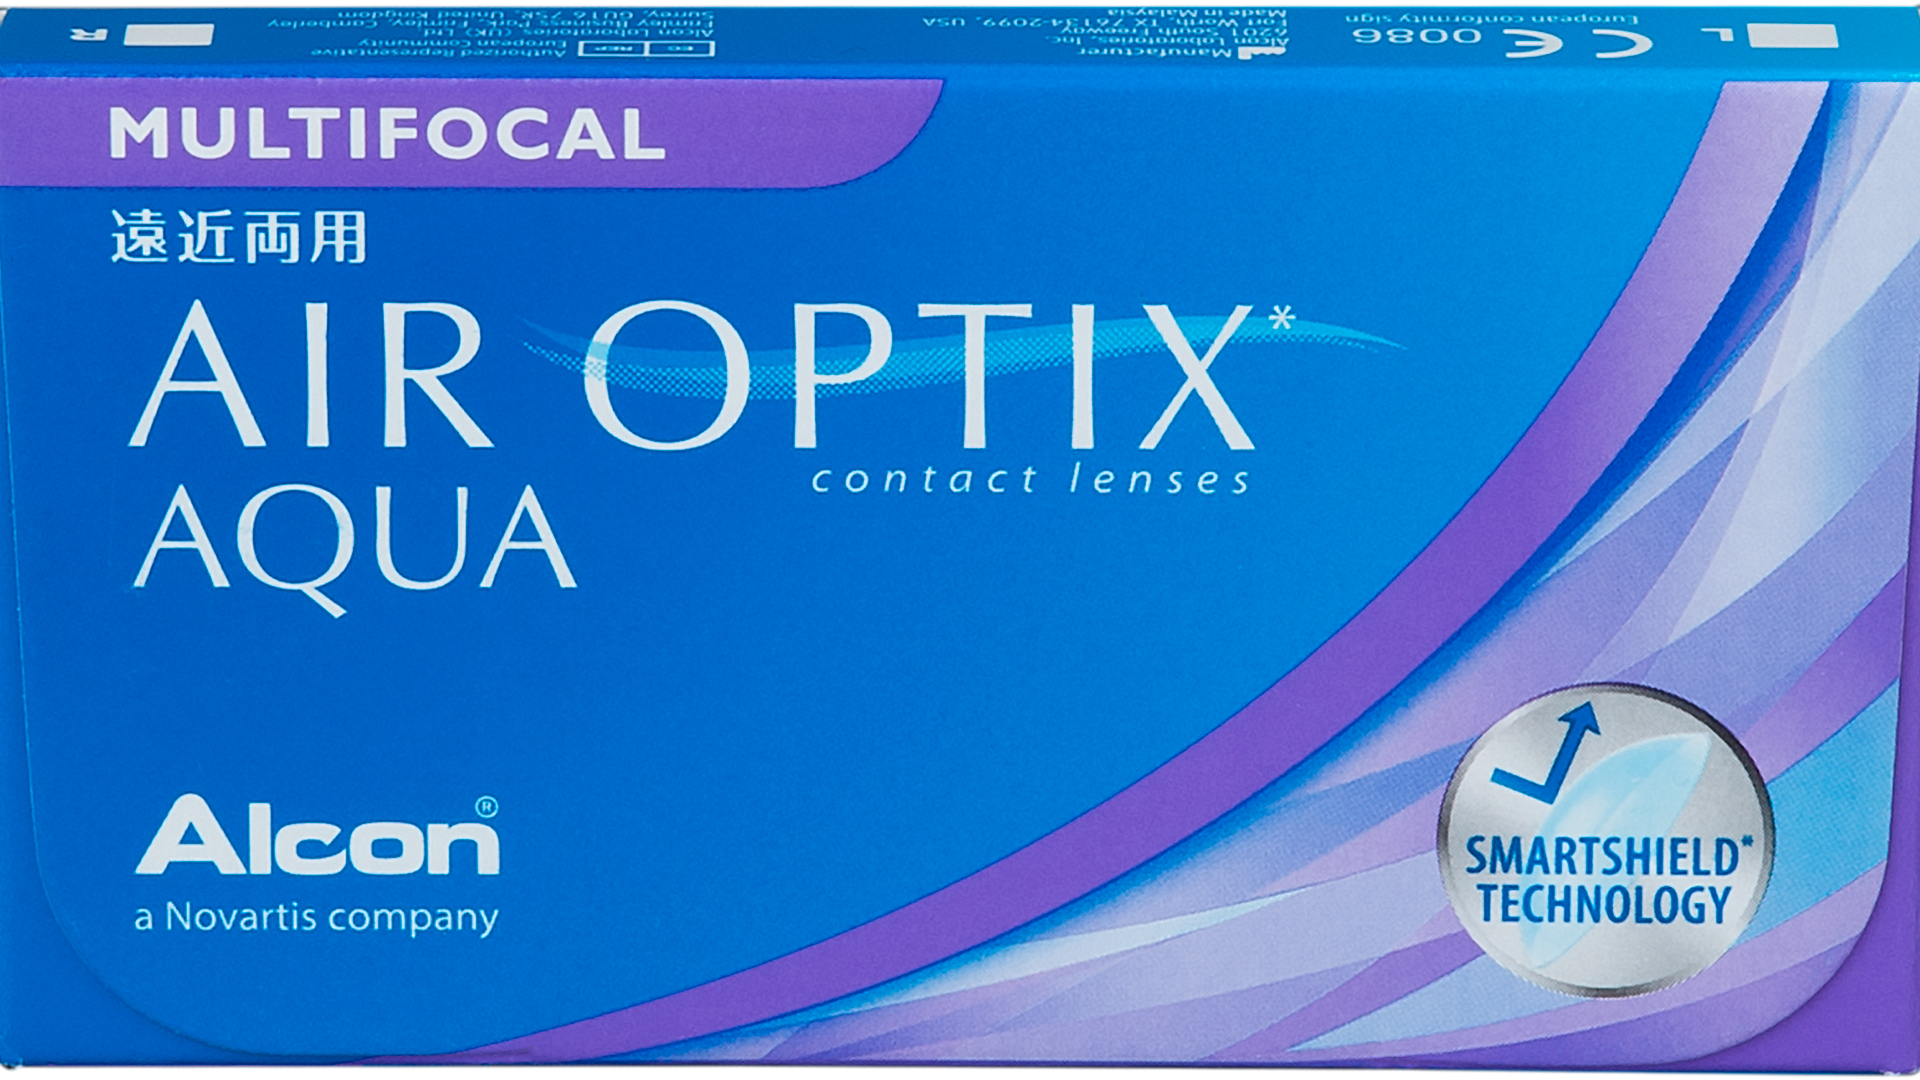 Front Air Optix Air Optix Aqua Multifocal Mensais 6 lentes por caixa